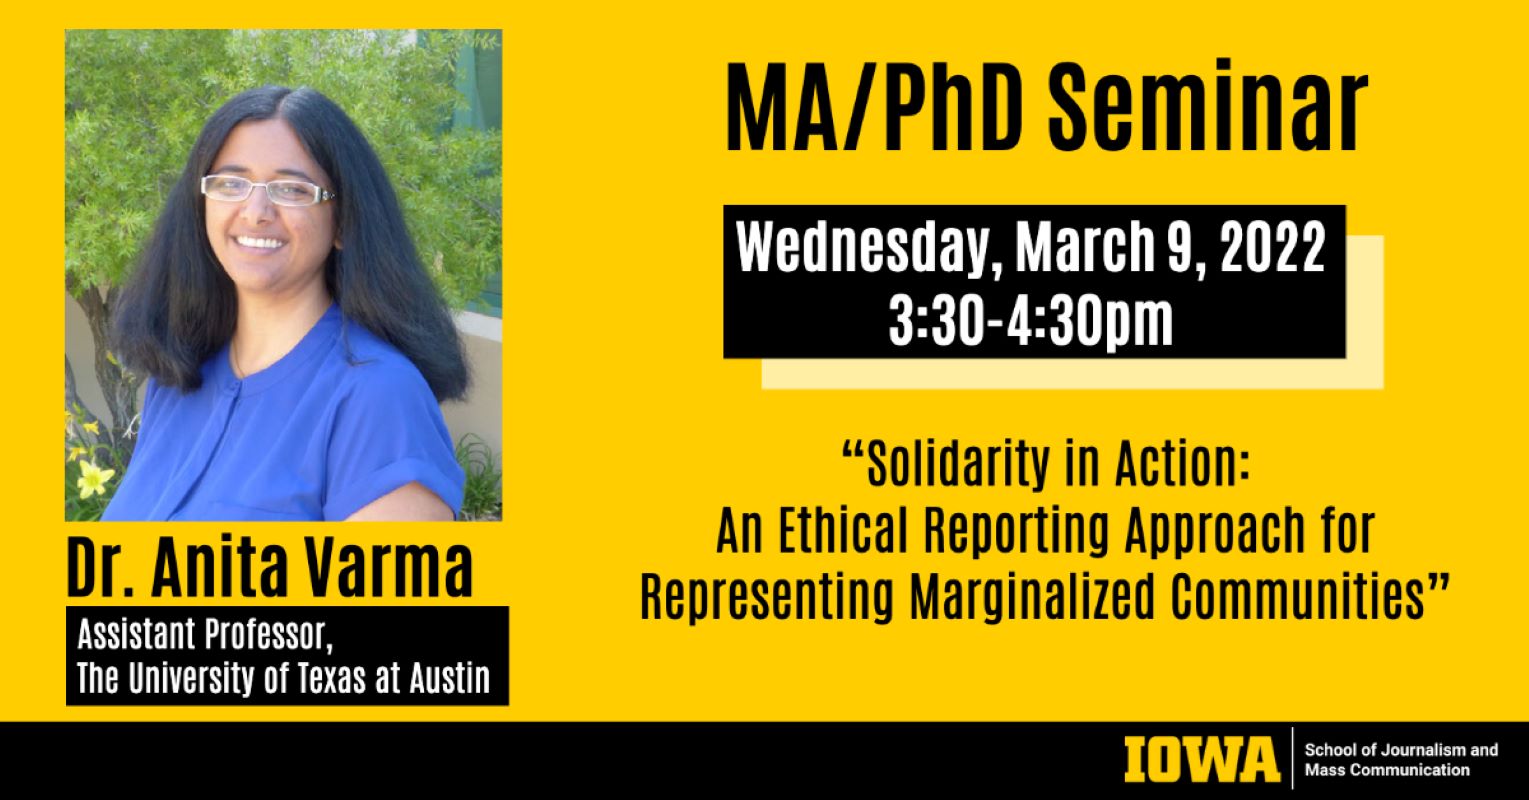 Dr. Anita Varma at MA/PhD Seminar March 9 3:30-4:30